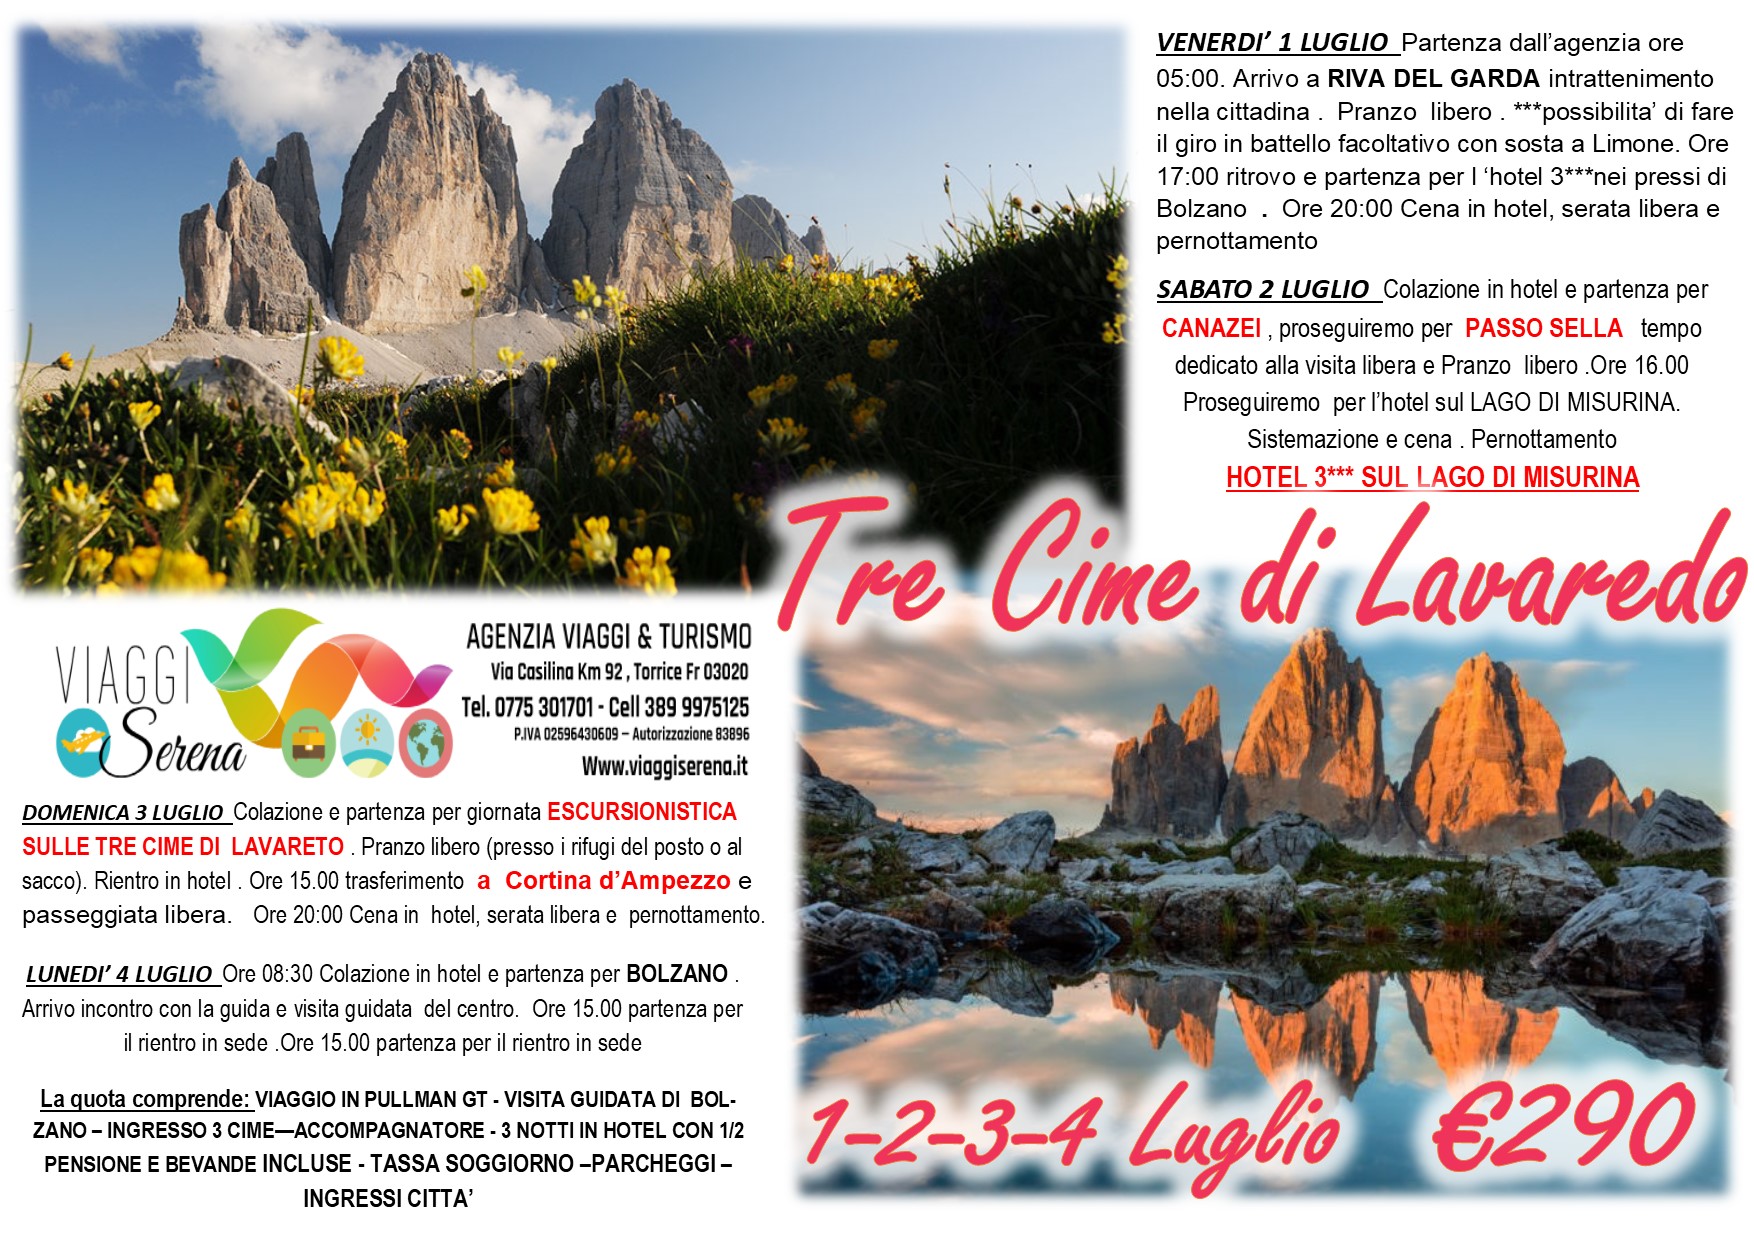 Viaggi di Gruppo: Tre Cime di LAVAREDO, Passo Sella, Cortina d’Ampezzo & Canazei 1-2-3-4 Luglio € 290,00